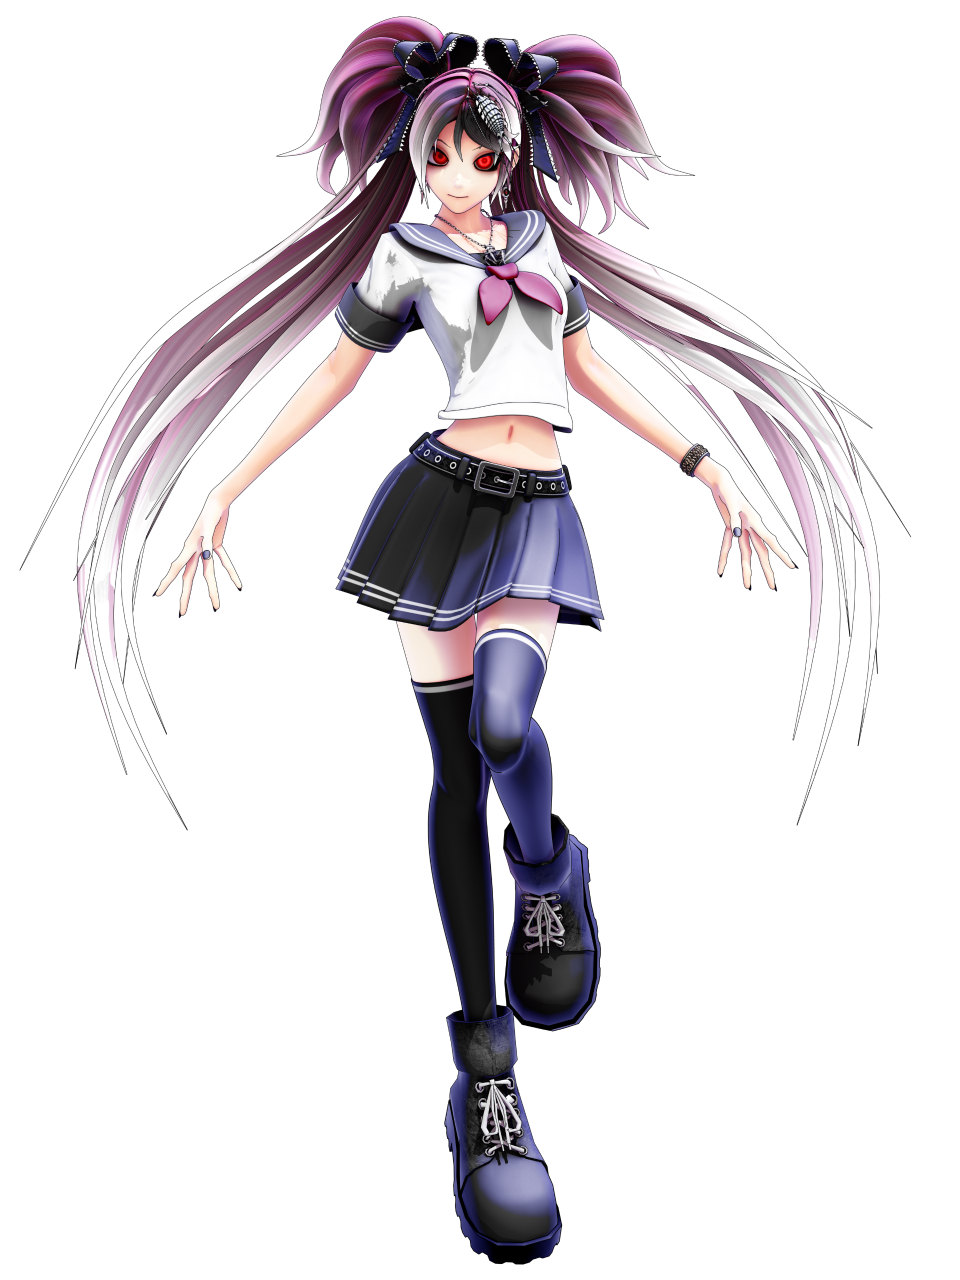 「感染×少女」Deino氏が制作したオリジナルキャラクター「シーエ」とのコラボが決定の画像